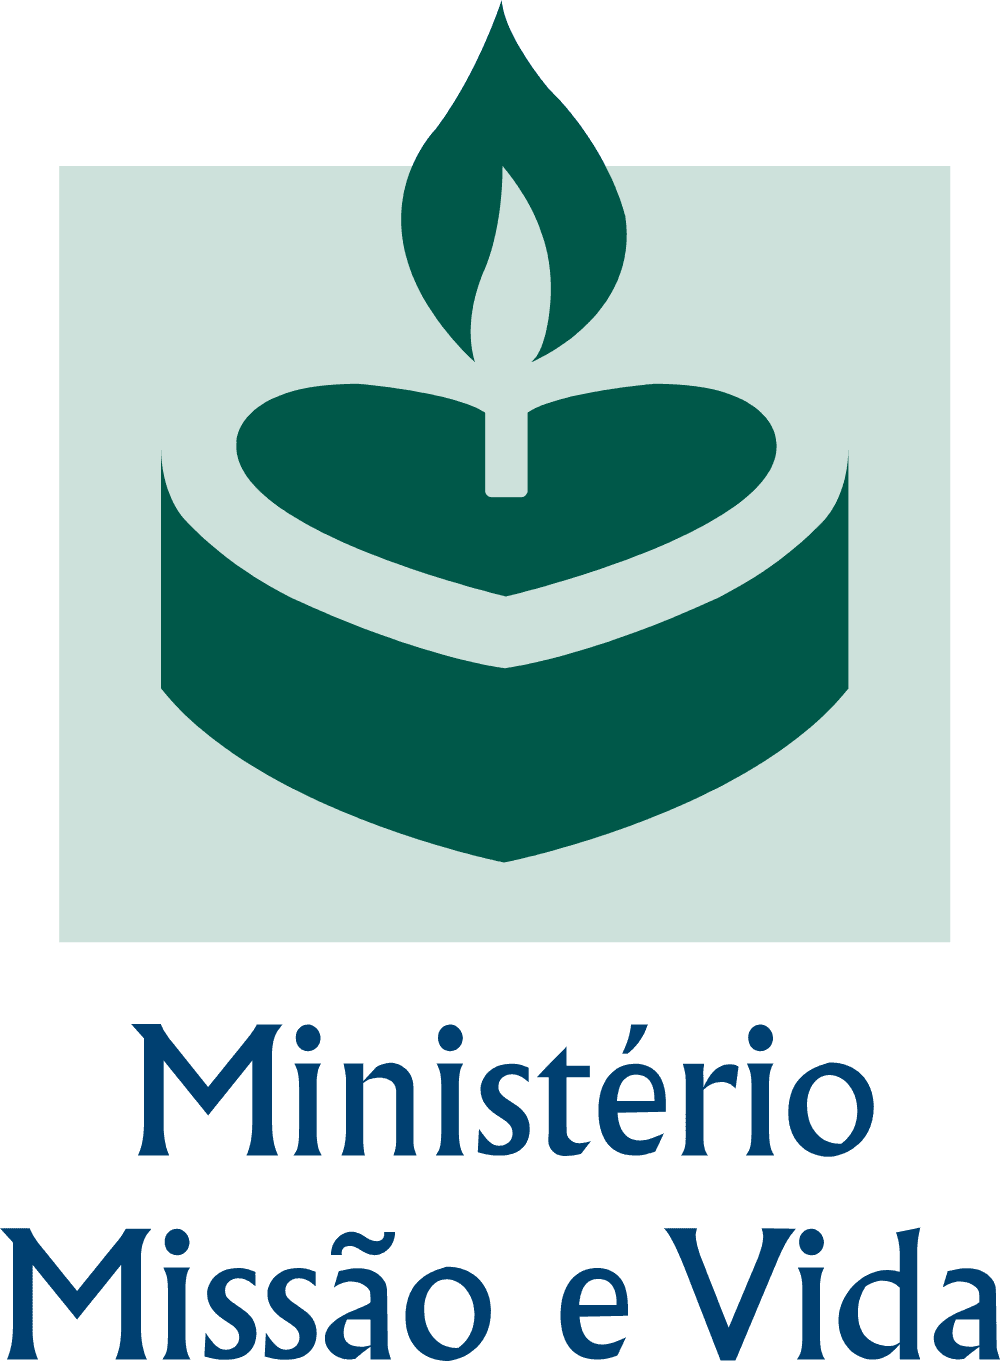 Ministerio Missao e Vida Logo download